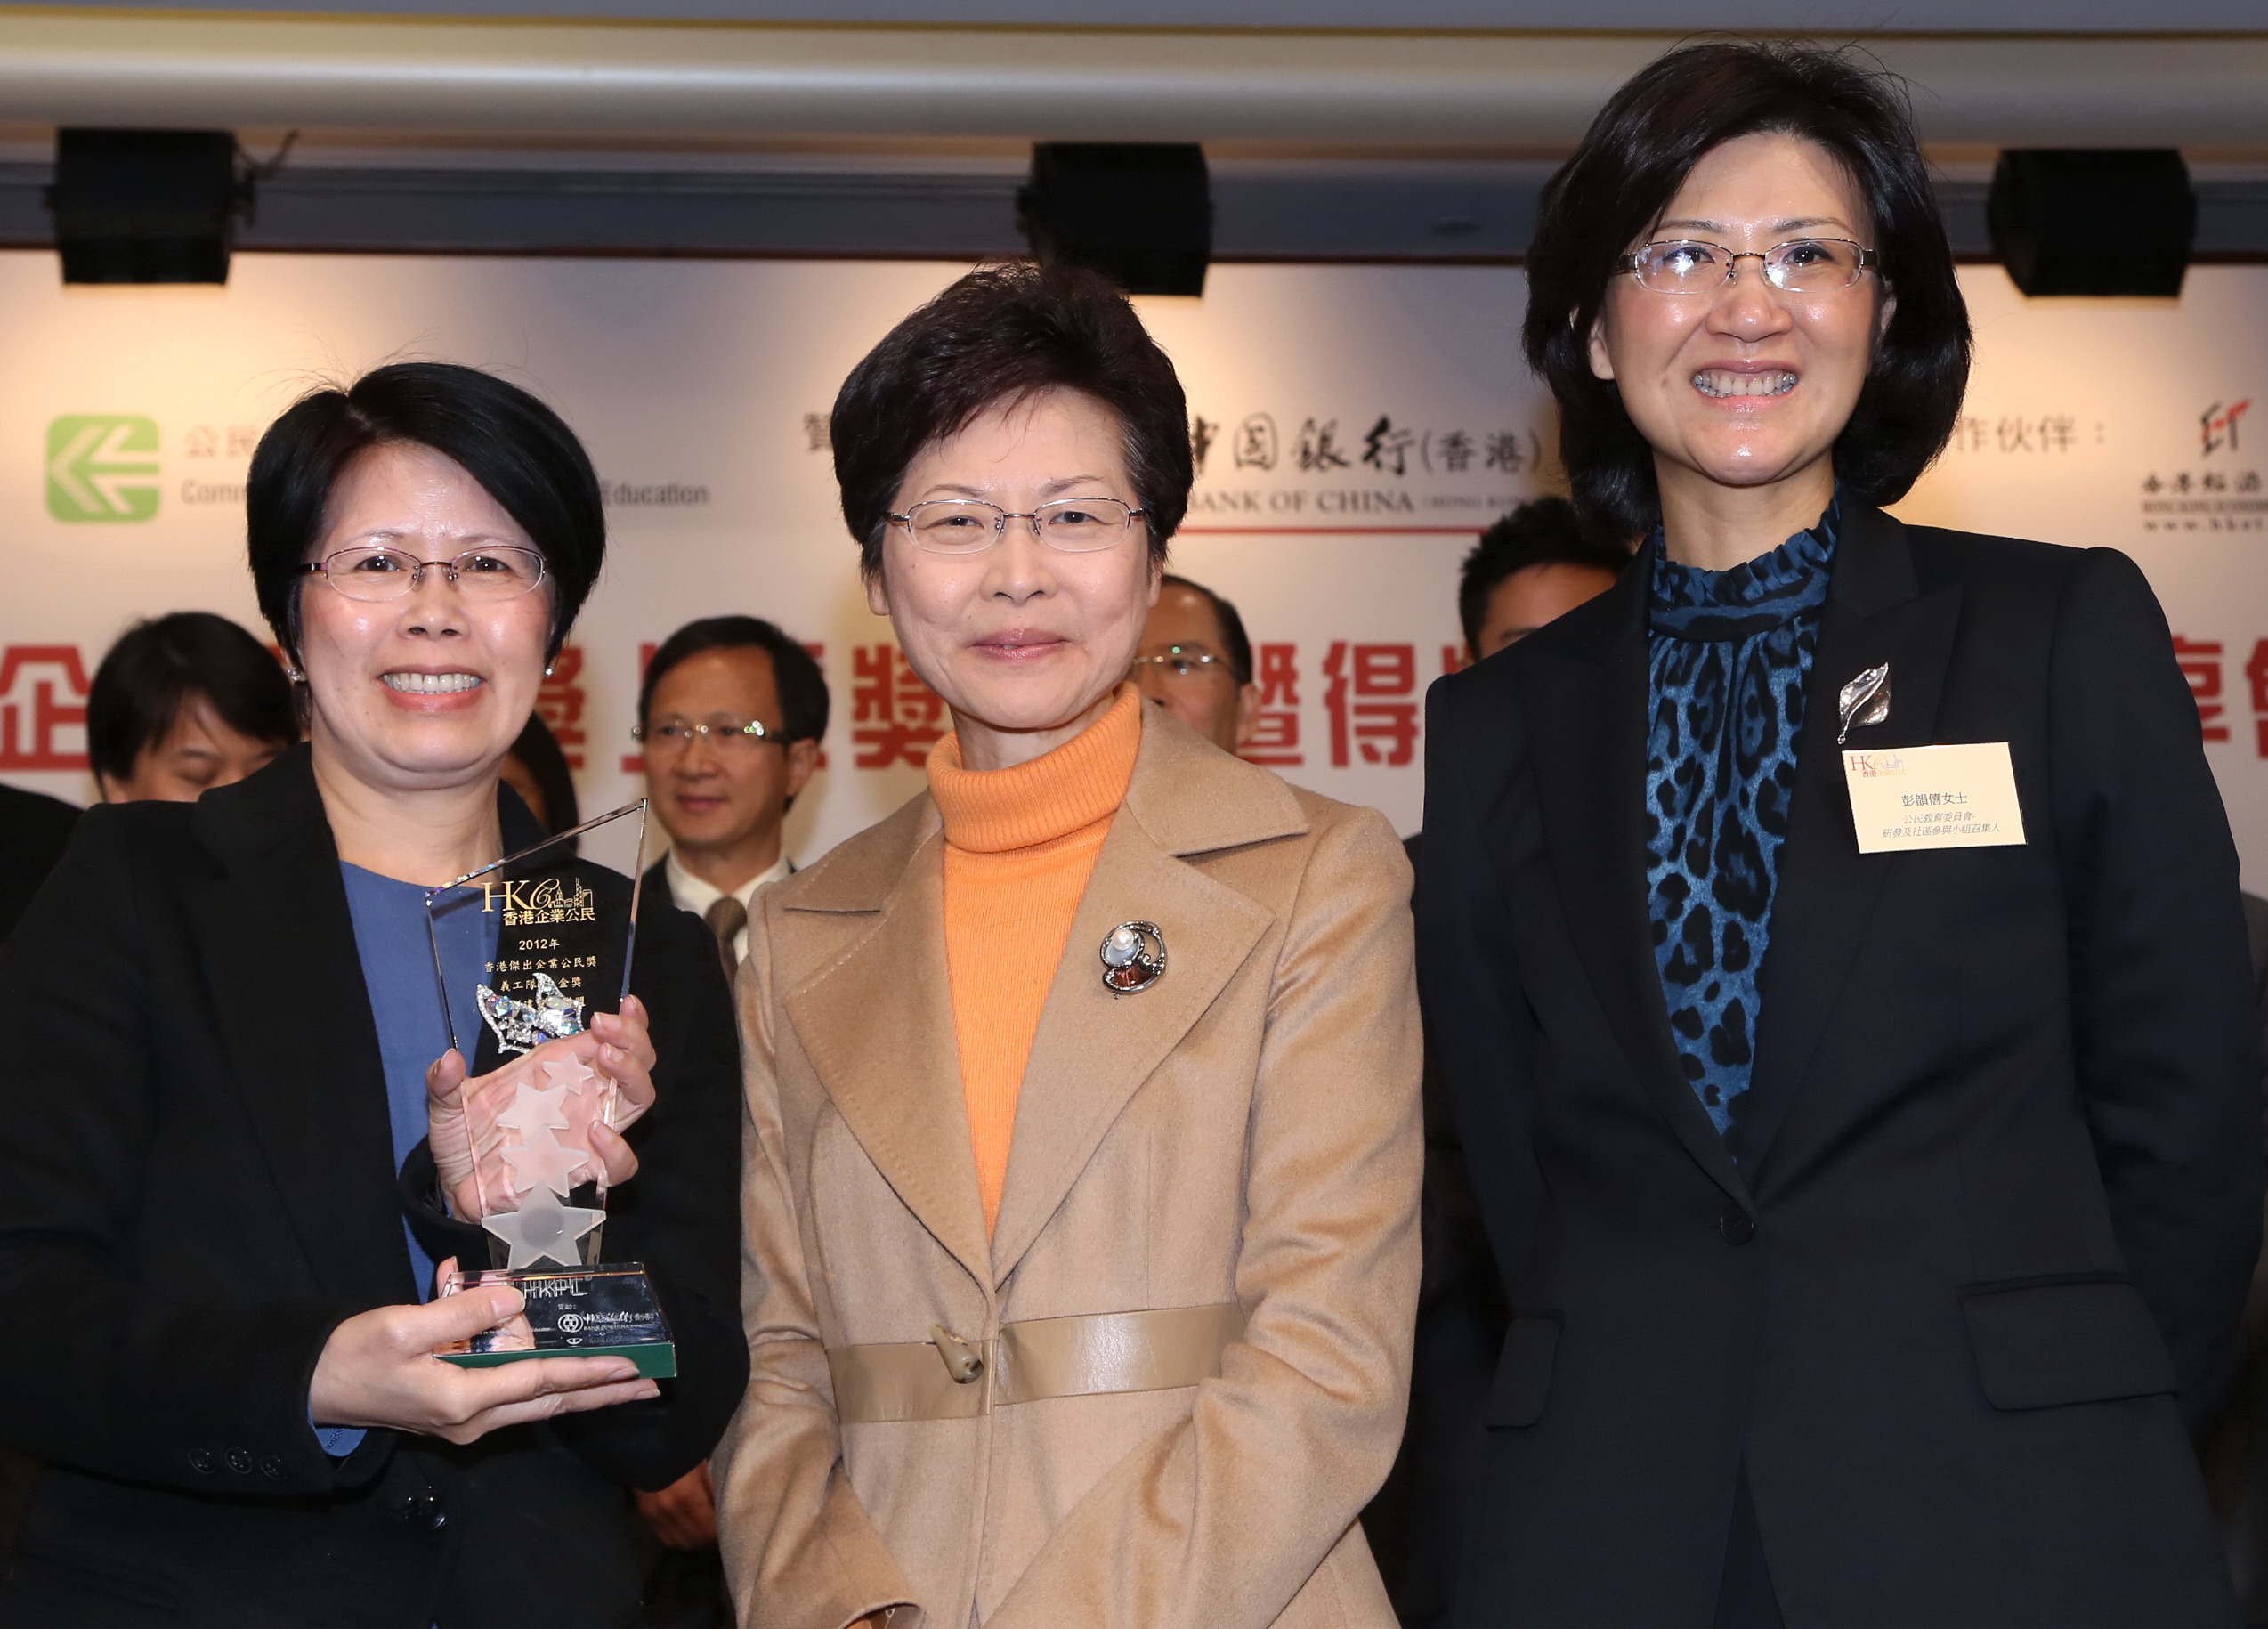 新創建集團義工隊連續兩年榮獲「香港傑出企業公民獎」義工隊組別金獎